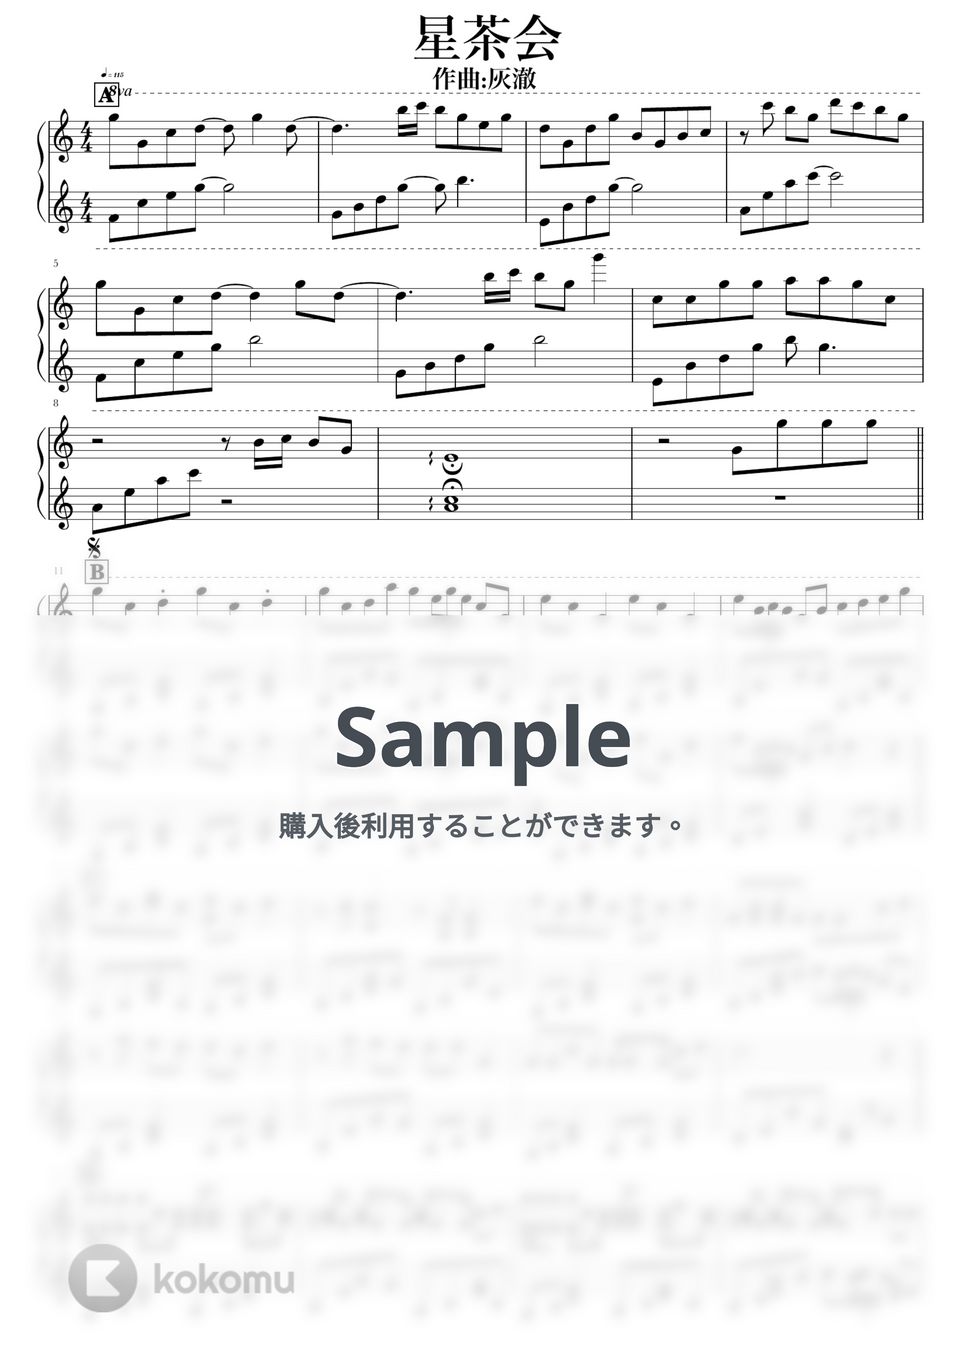 灰澈 - 星茶会 by NOTES music